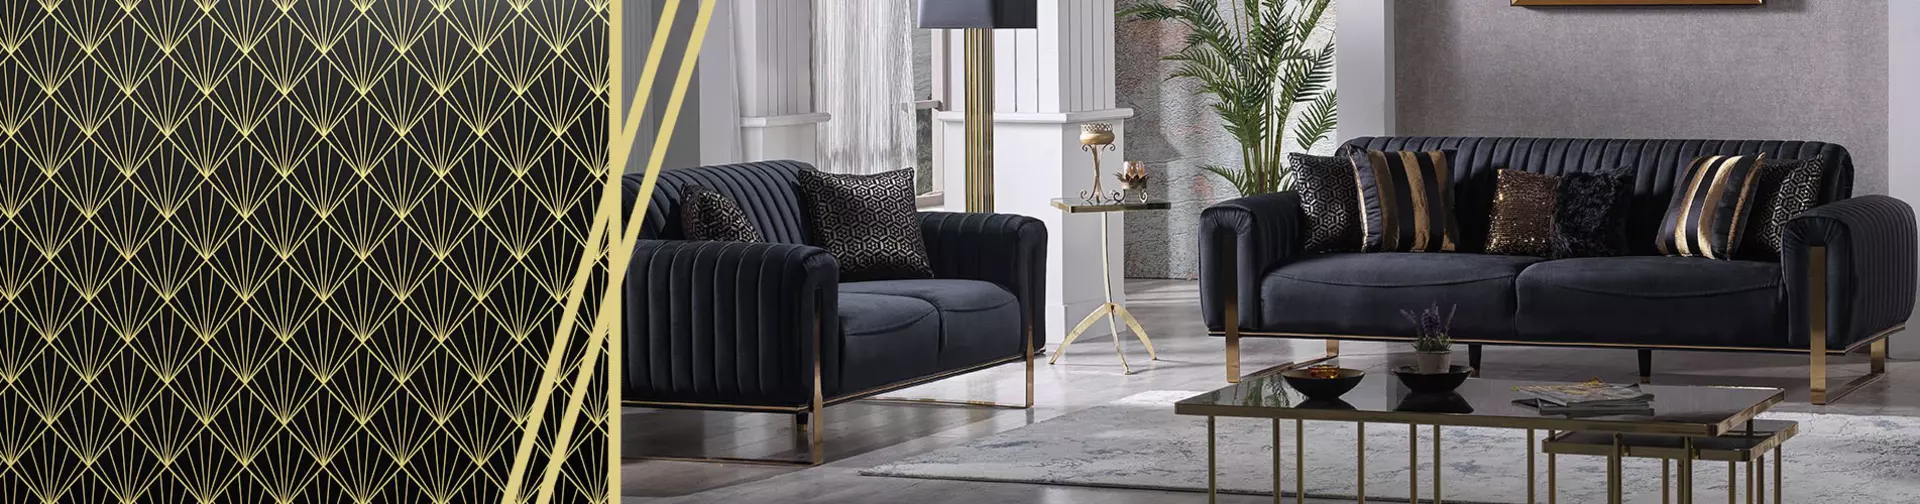 Verleihen Sie ihrer Wohnung einen modernen Touch und  lassen sie sich von Möbel Inhofer inspirieren!